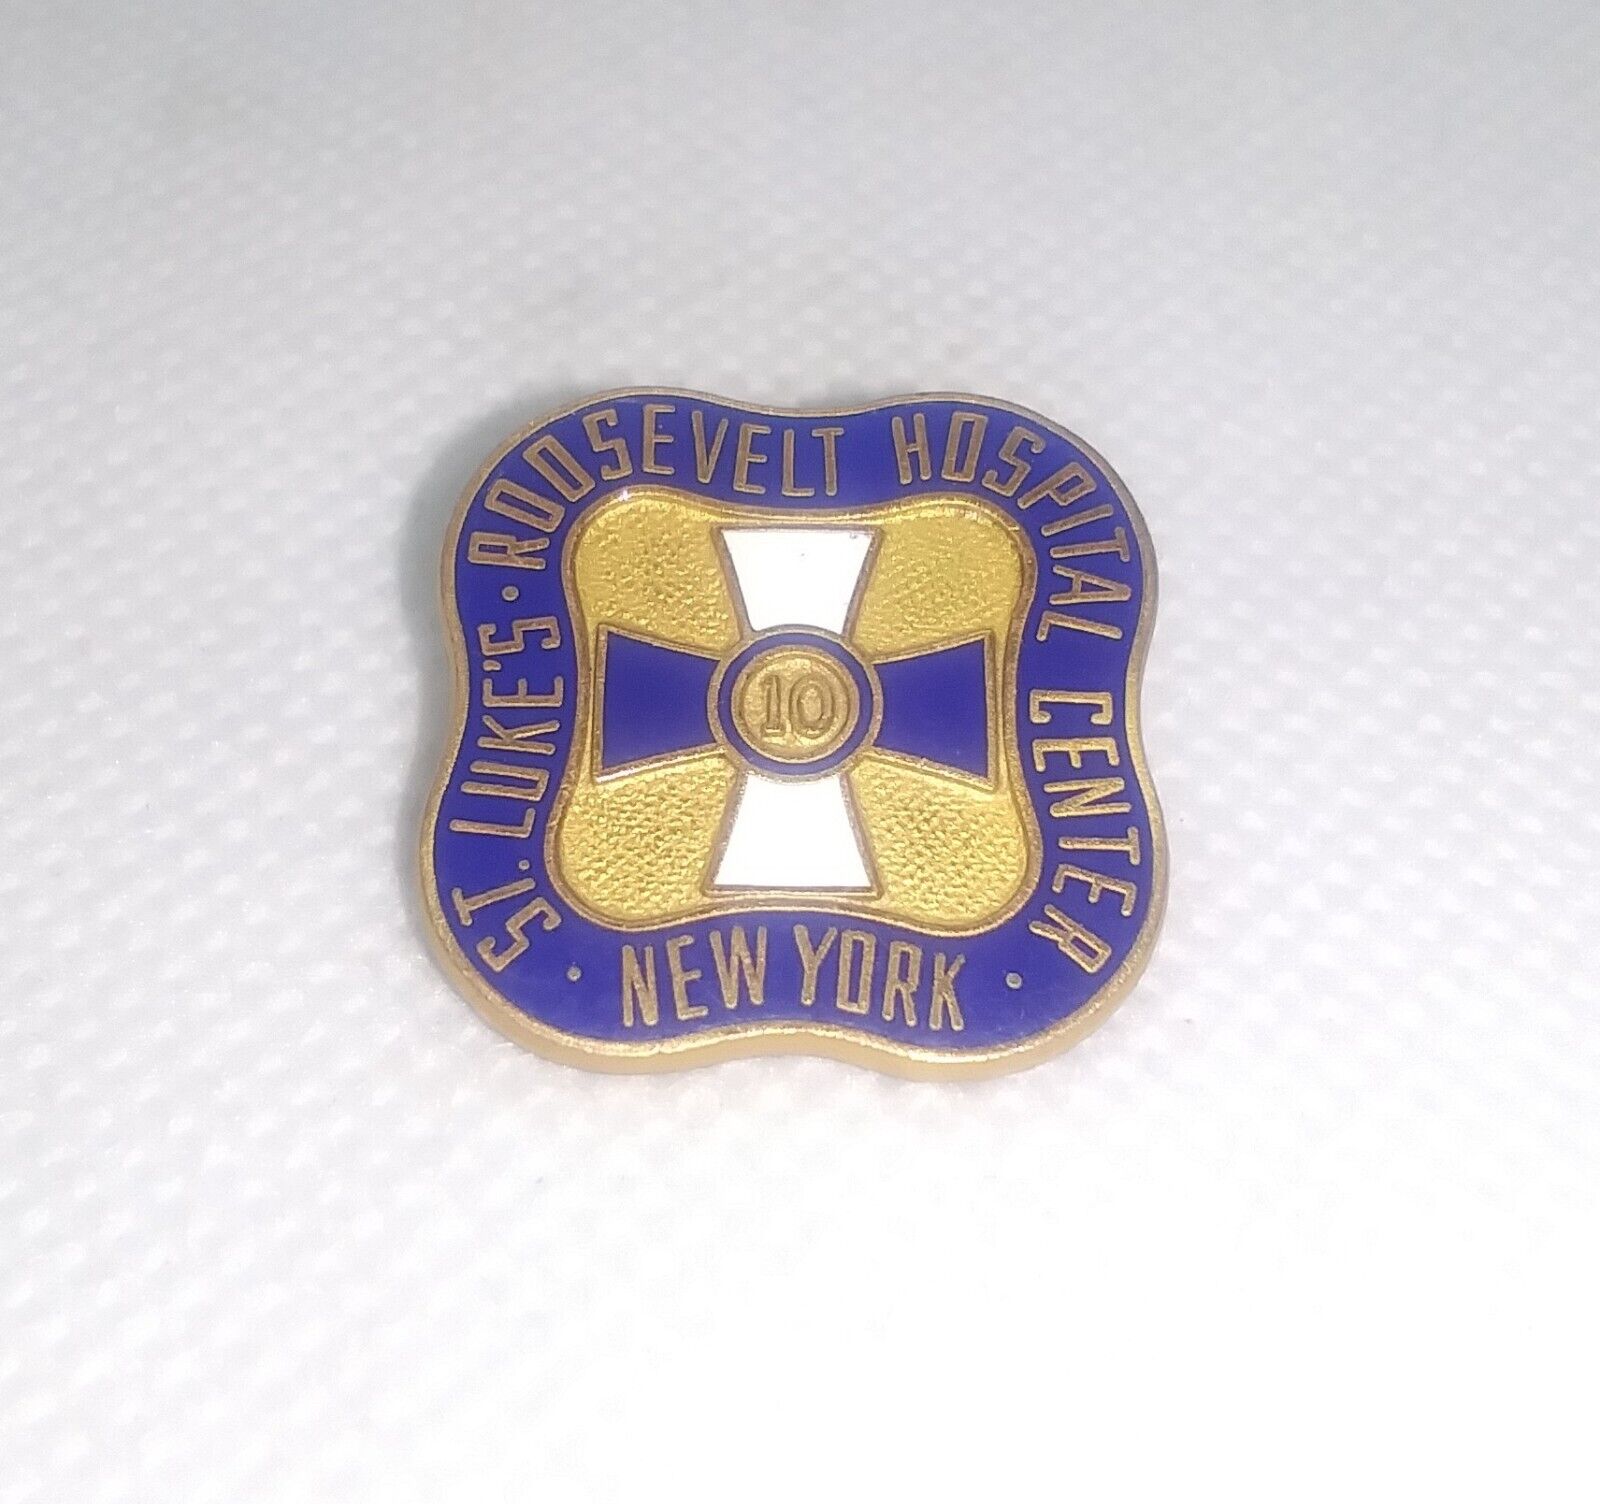 St. Lukes Roosevelt Hospital Center New York 10 Year Pin